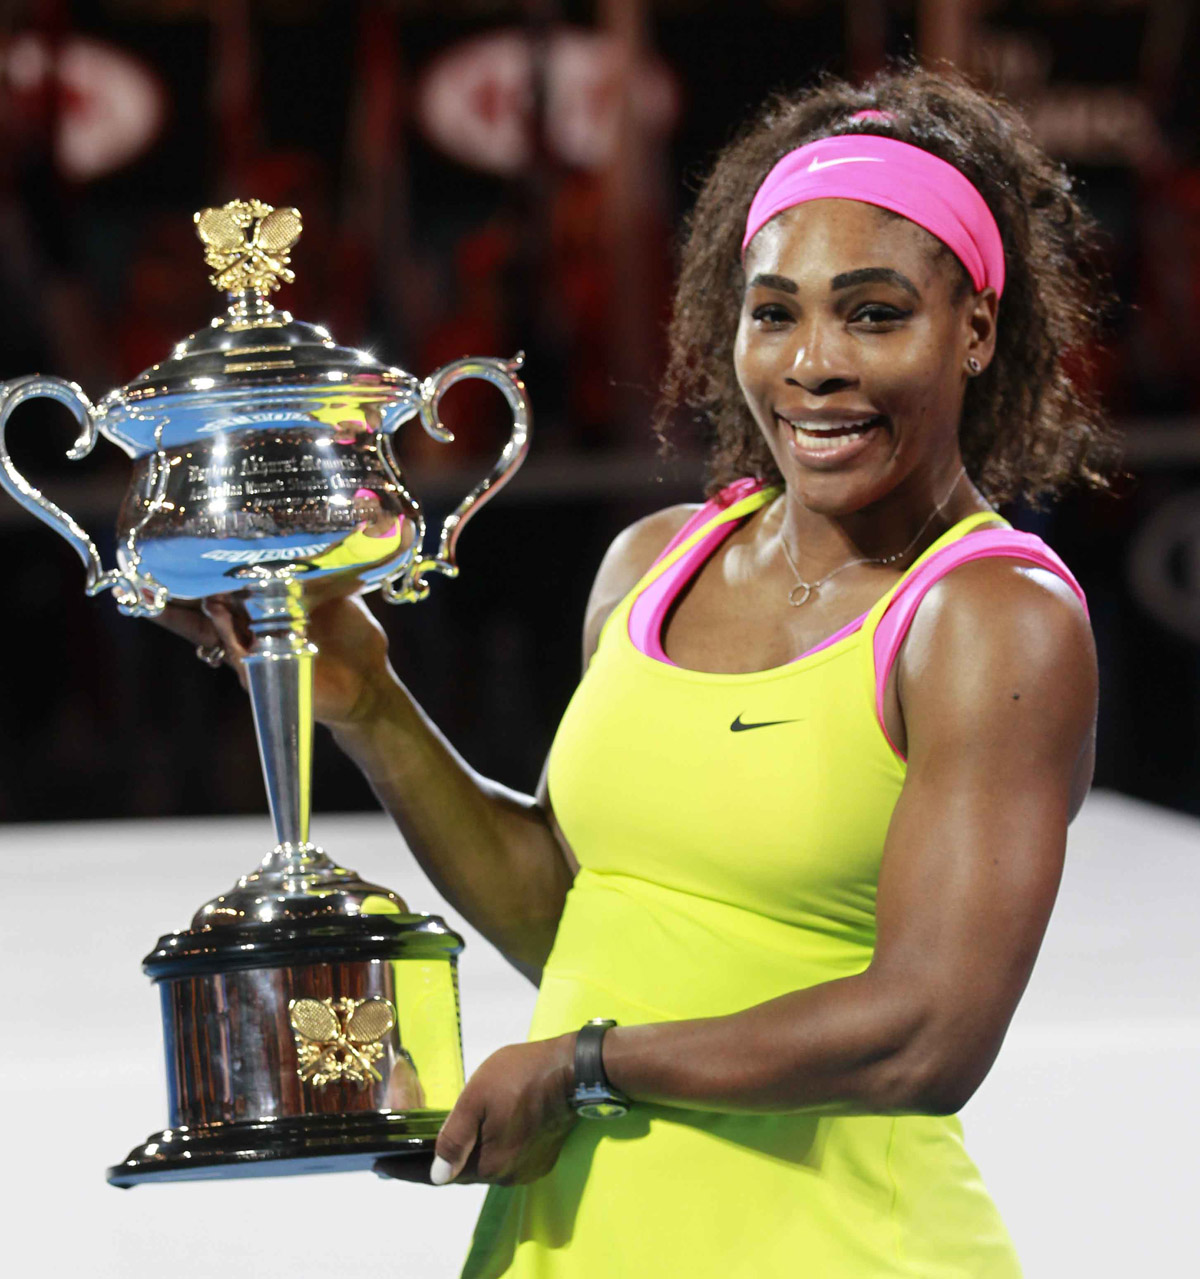 Serena campeona con trofeo